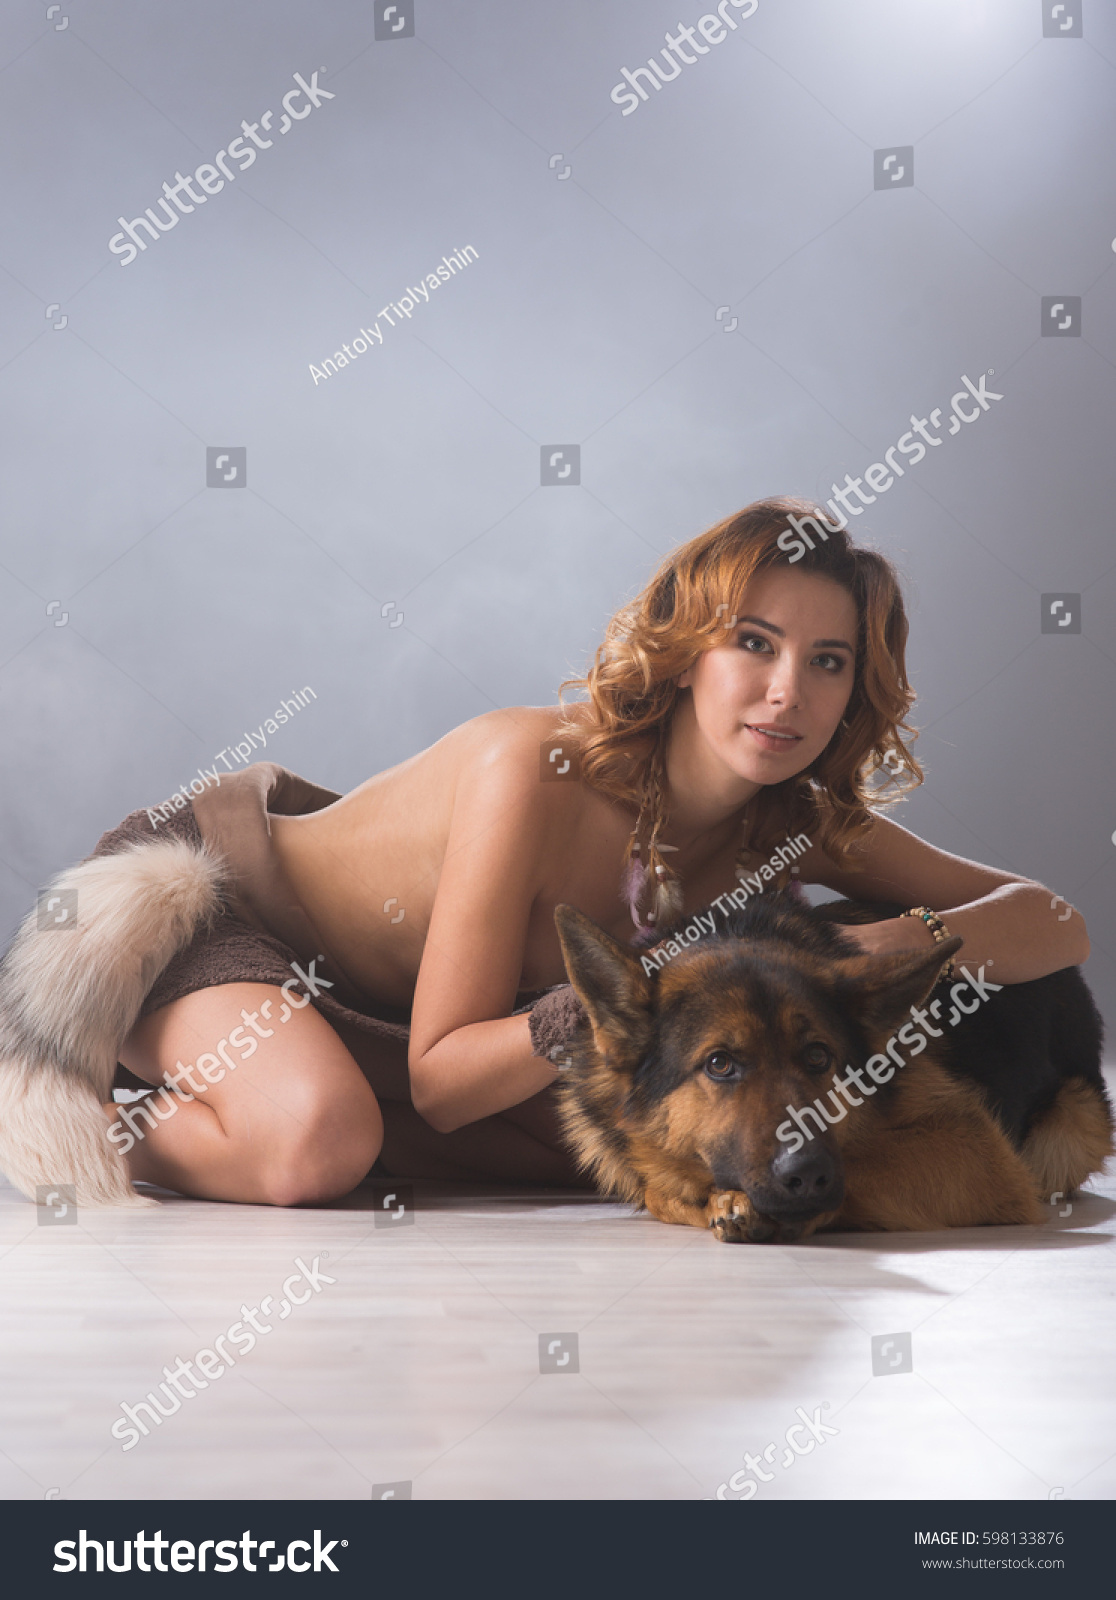 Dog nude